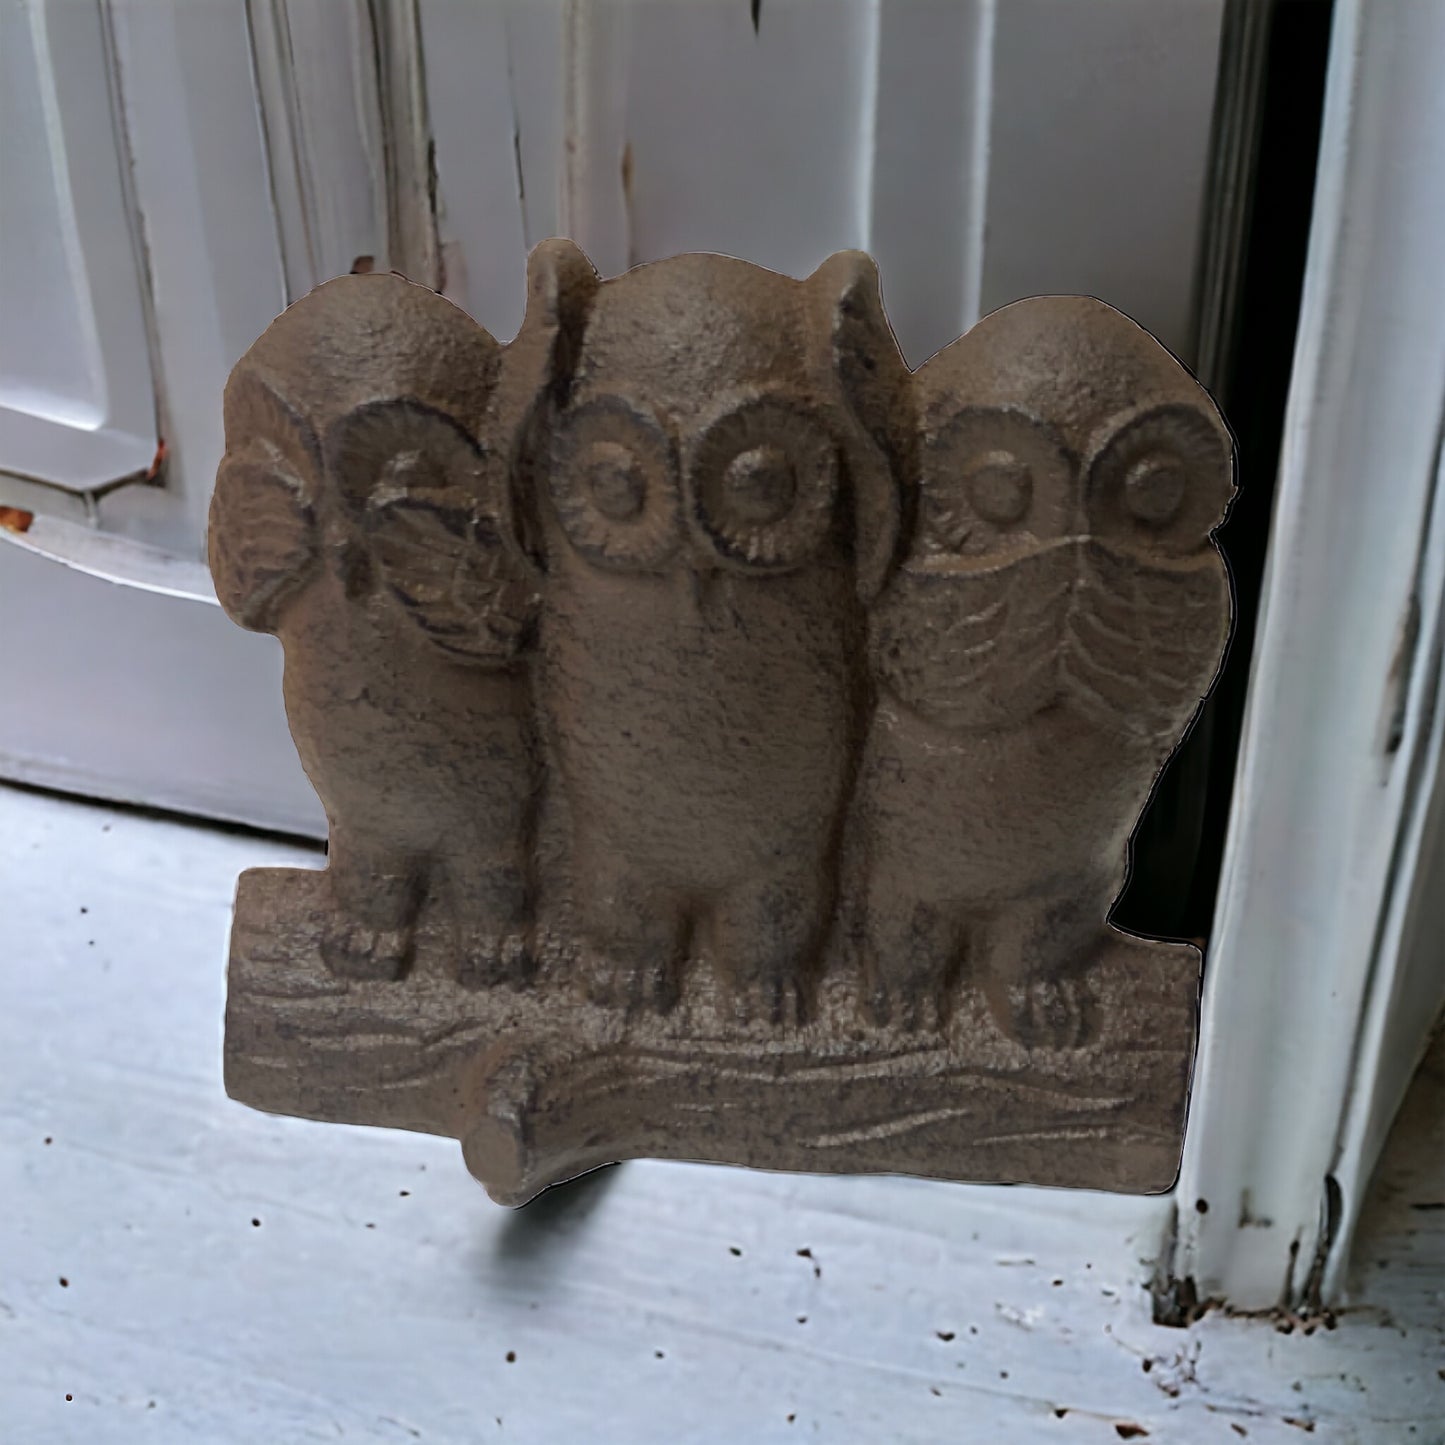 Owl Cast Iron Metal Door Stop Stopper Wedge